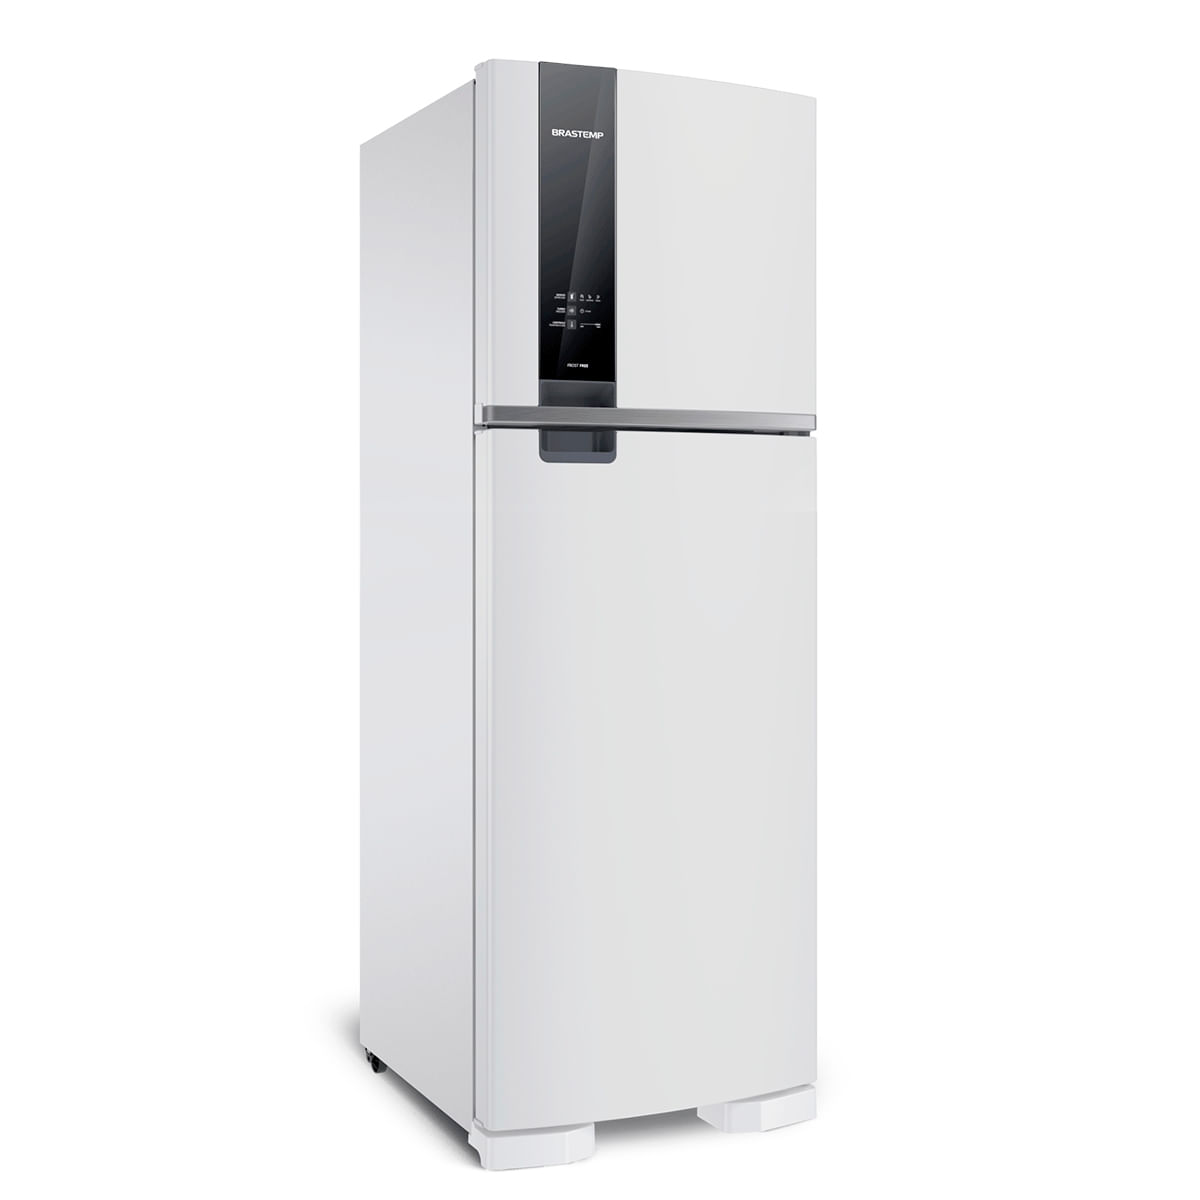 refrigerador-brastemp-2-portas-branco-375l-frost-free-220v-brm45hbbna-1.jpg